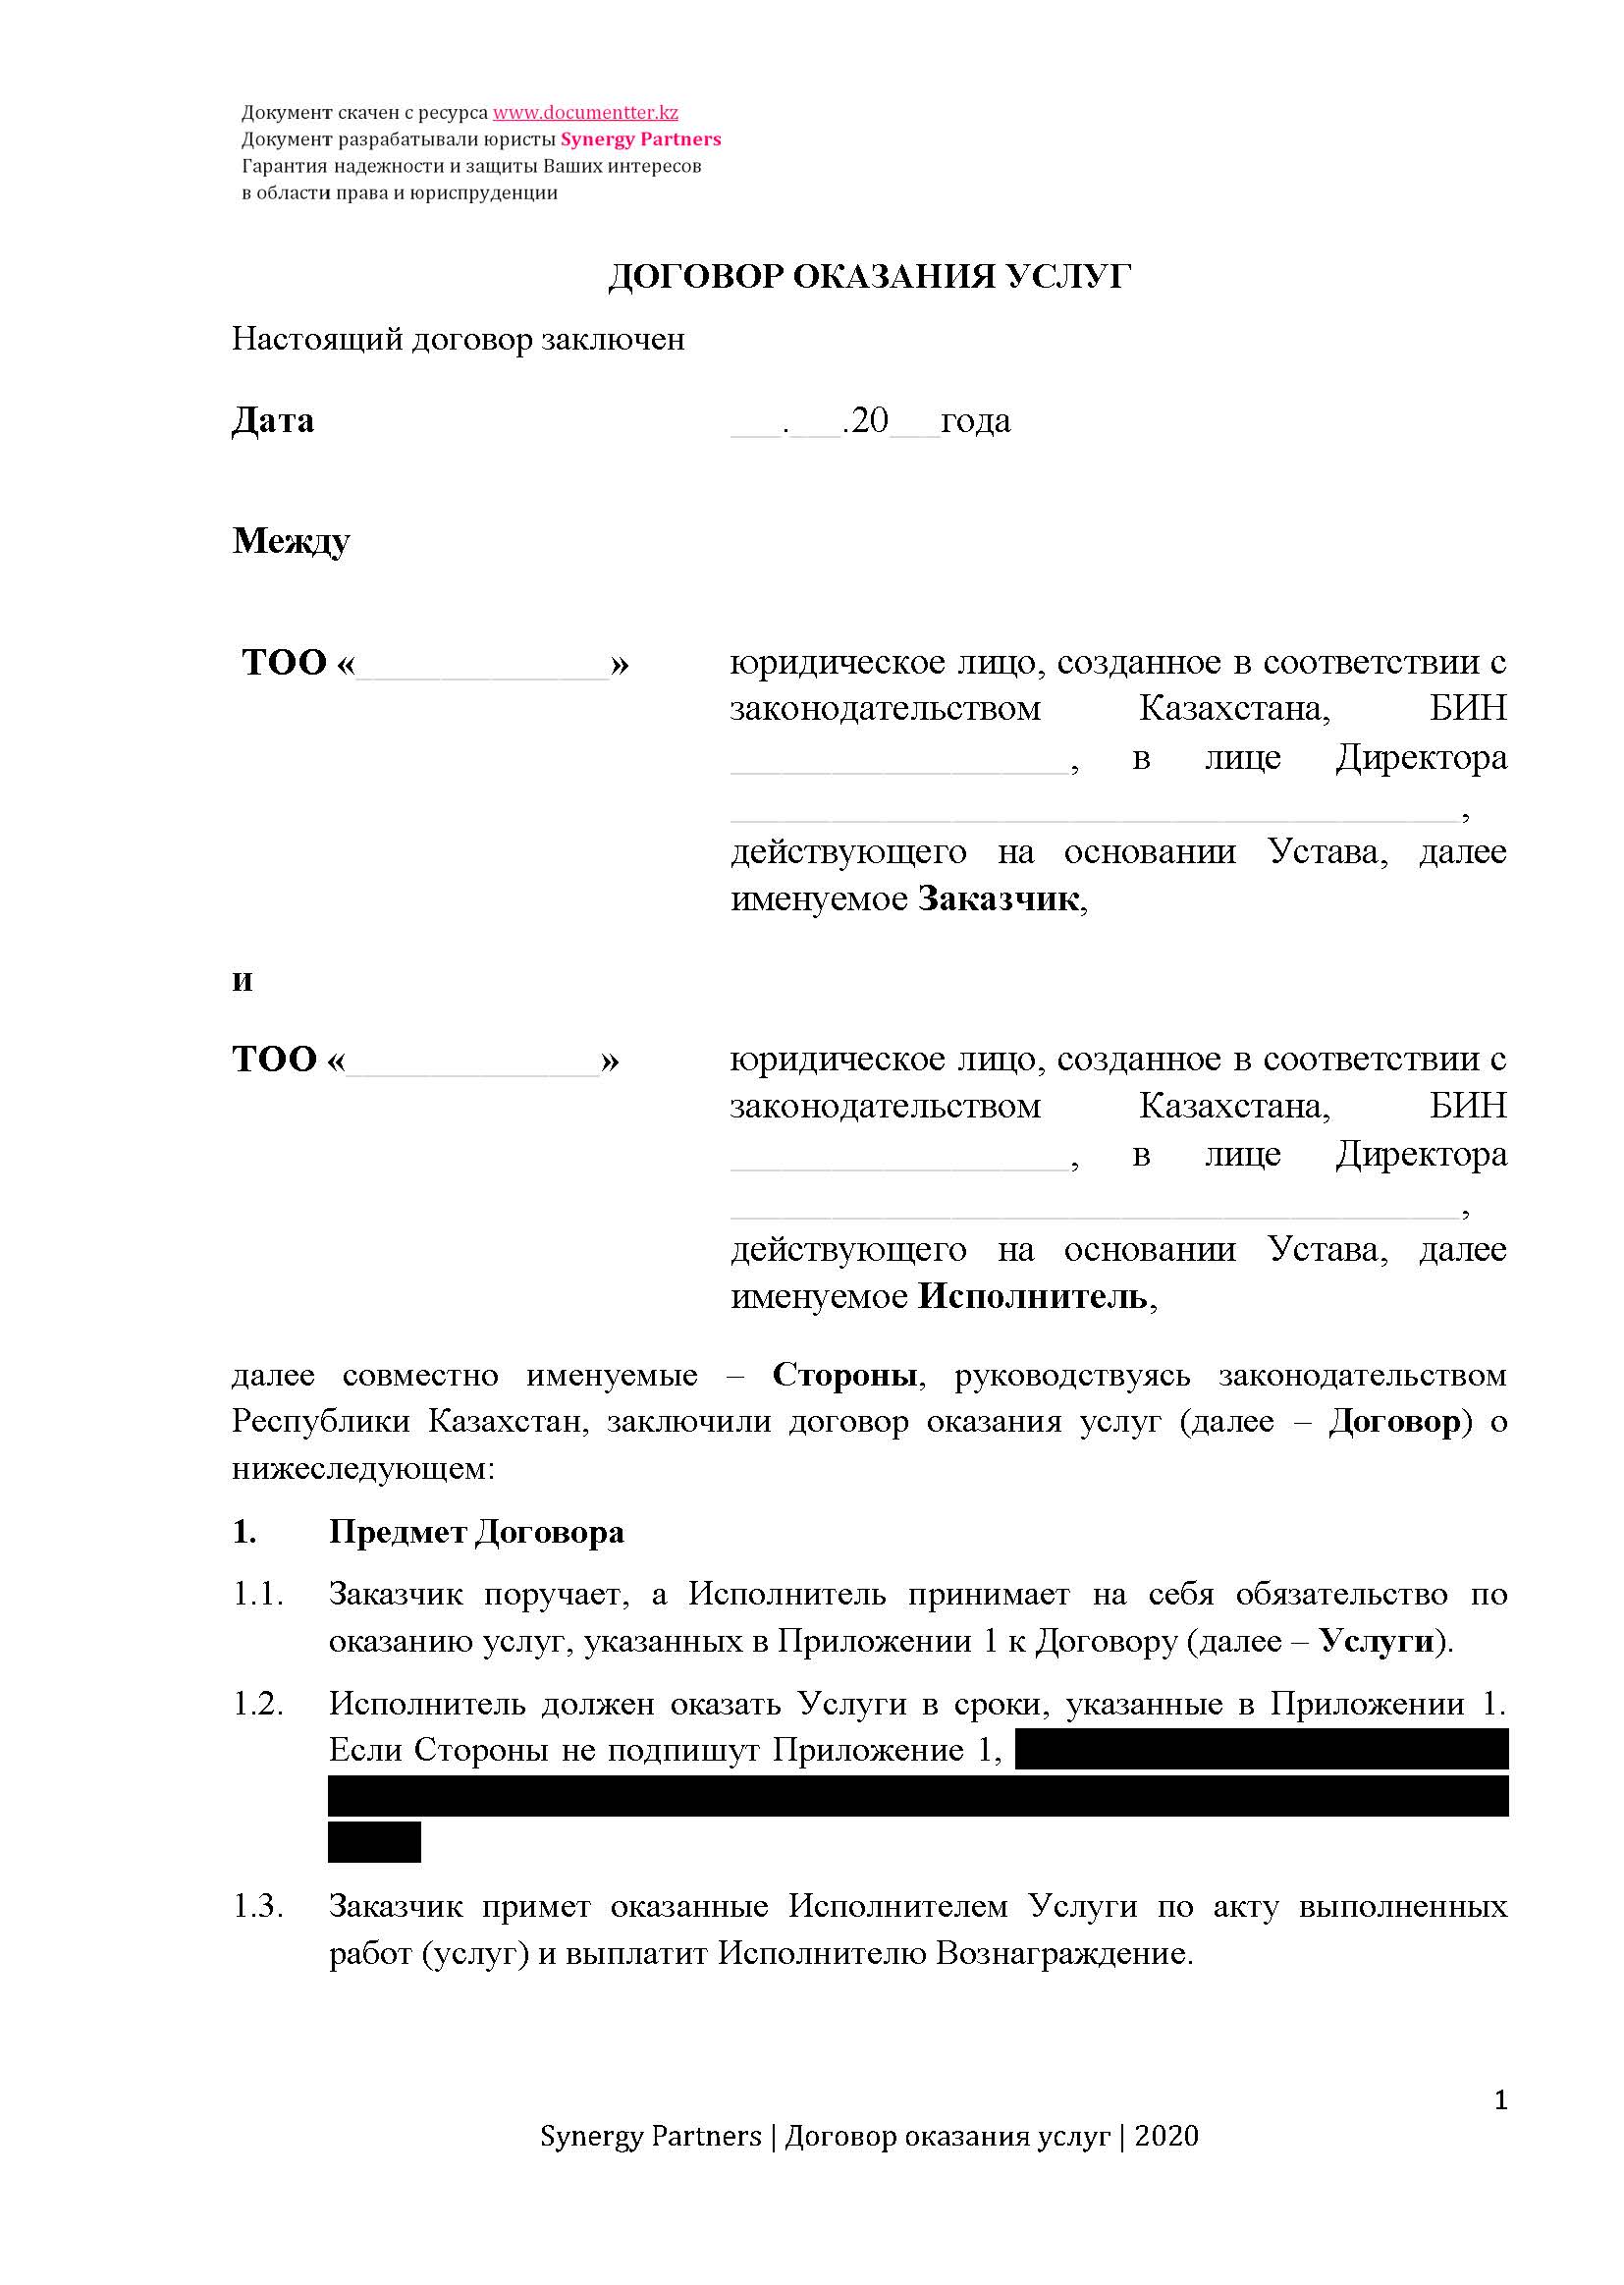 Договор оказания услуг 2 | documentter.kz в Казахстане 